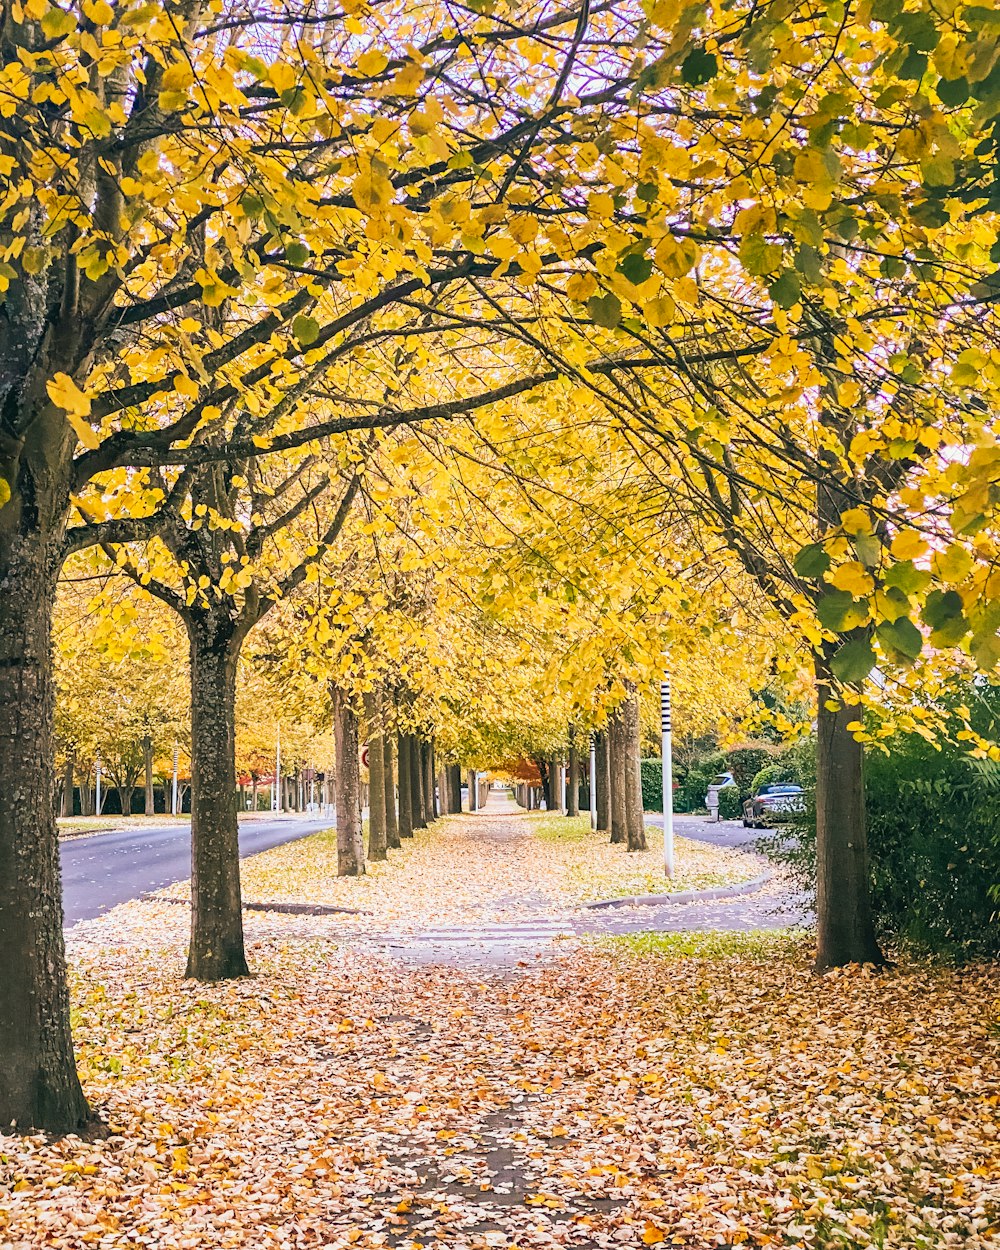 una calle arbolada con hojas amarillas en el suelo